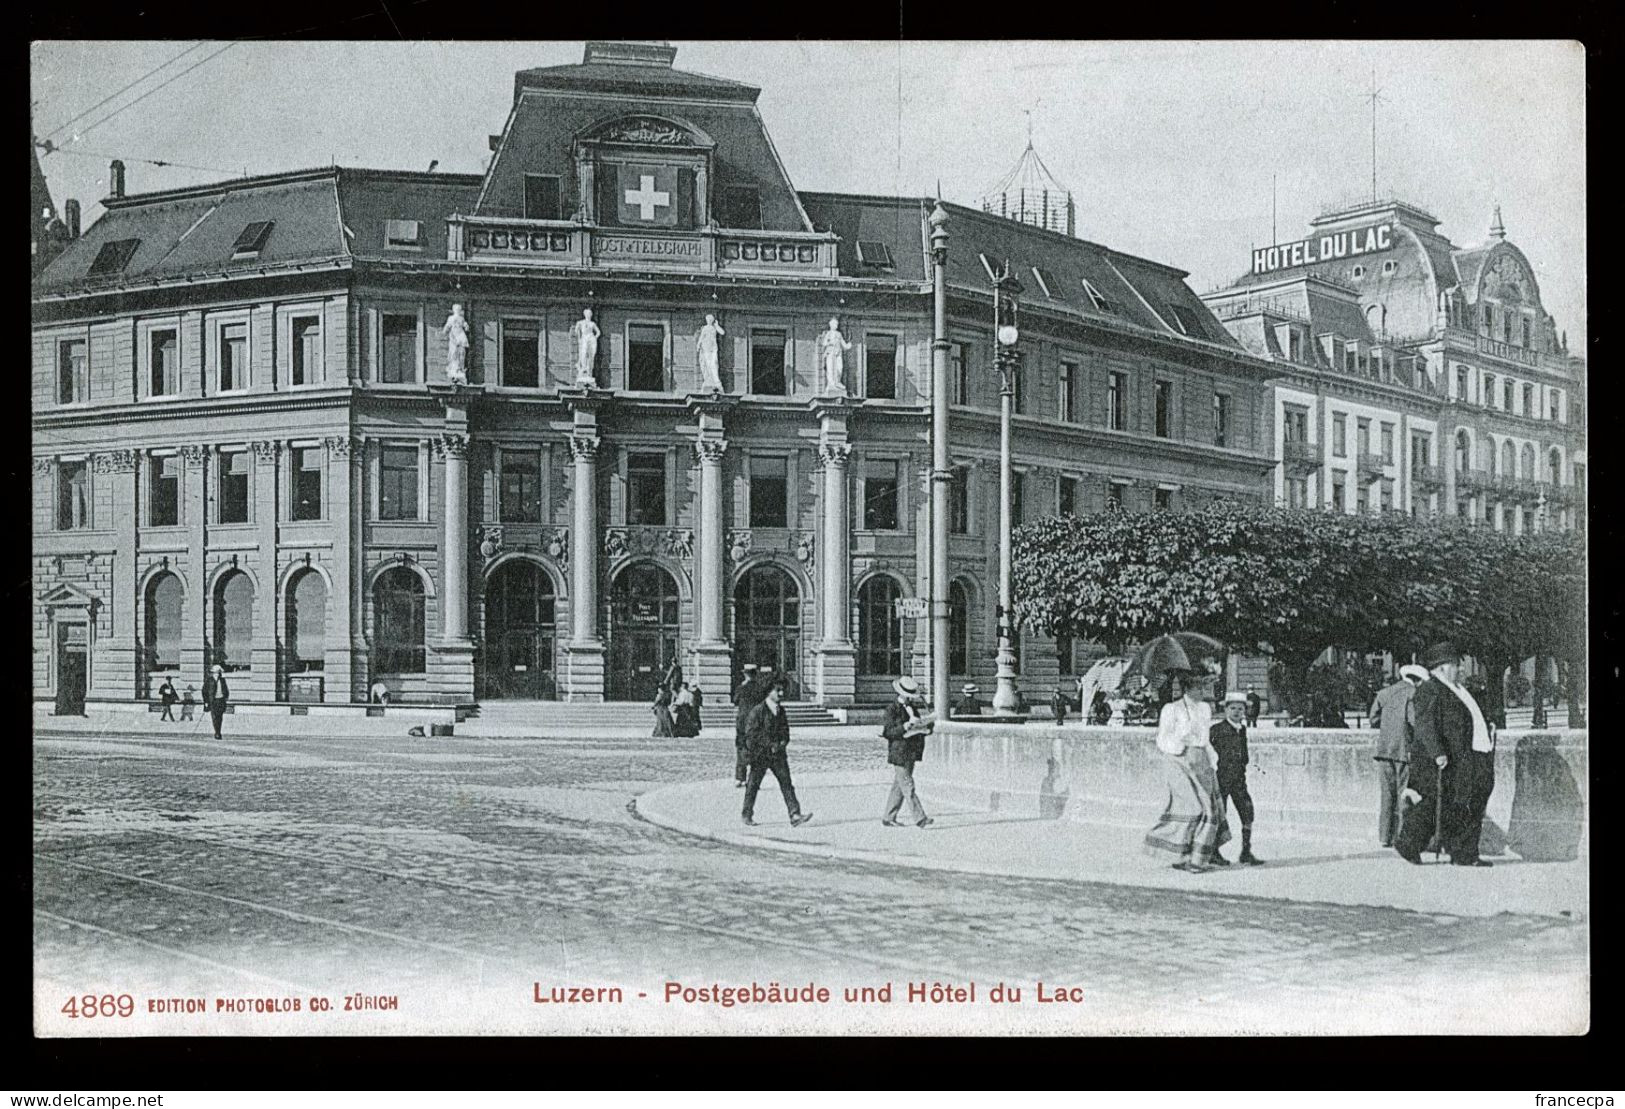 14770 - SUISSE - LUZERN - Postgebäude Und Hôtel Du Lac  - DOS NON DIVISE - Luzern